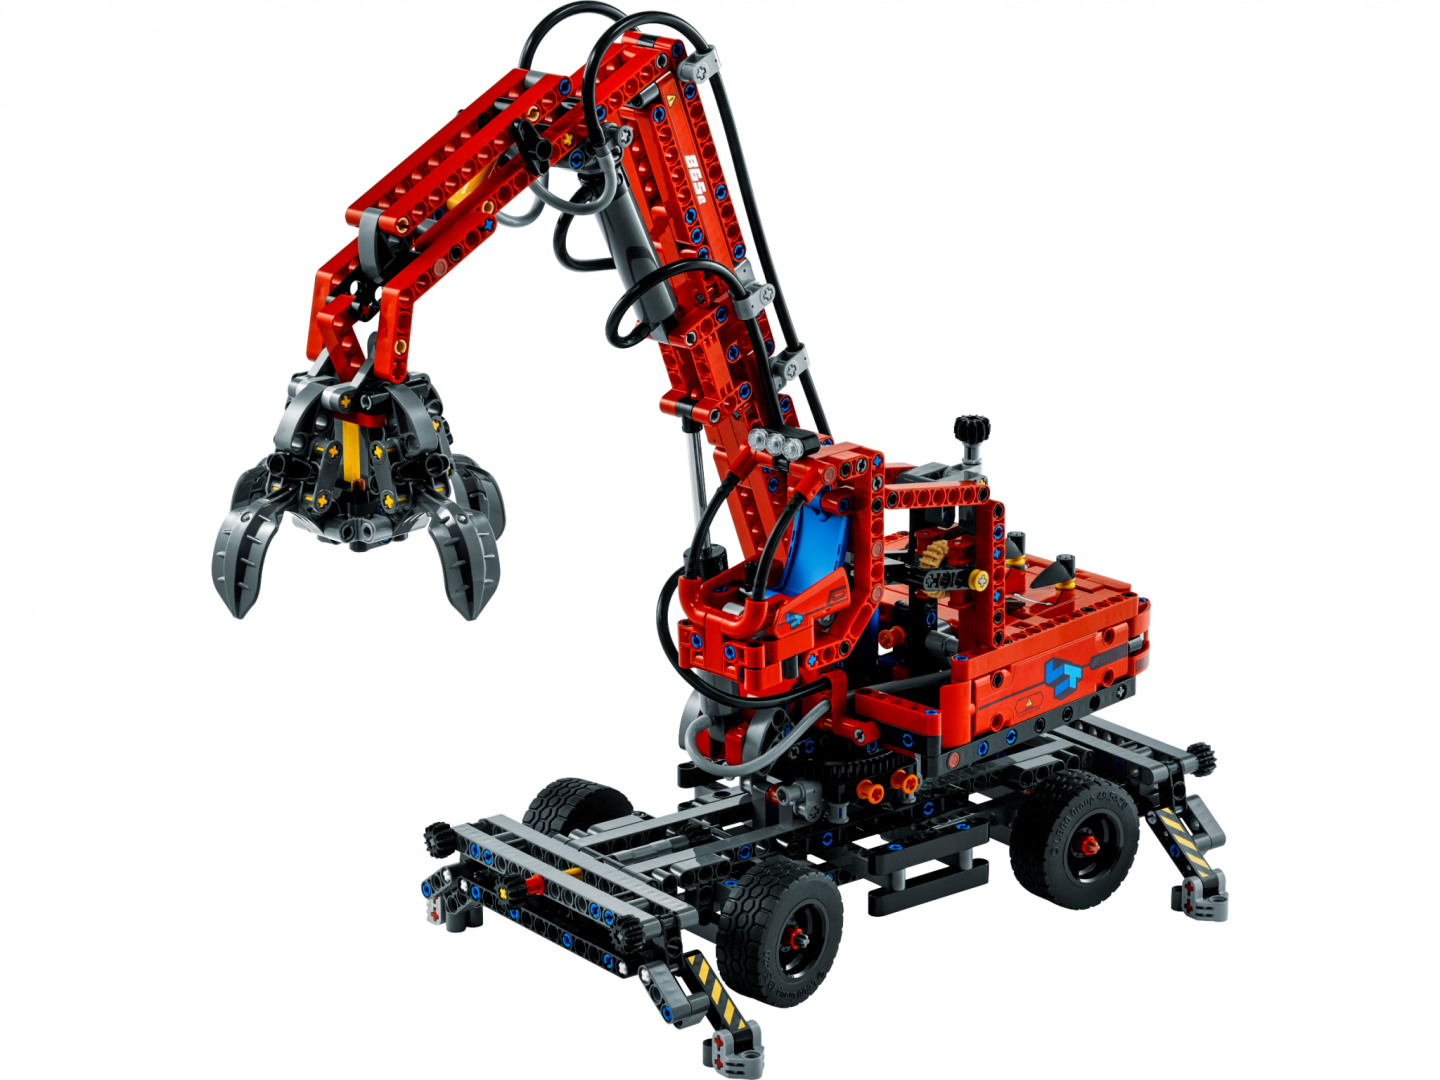 Joc set de constructie LEGO® Technic® - Manipulator de materiale LEGO42144, cca 800 piese, 10+